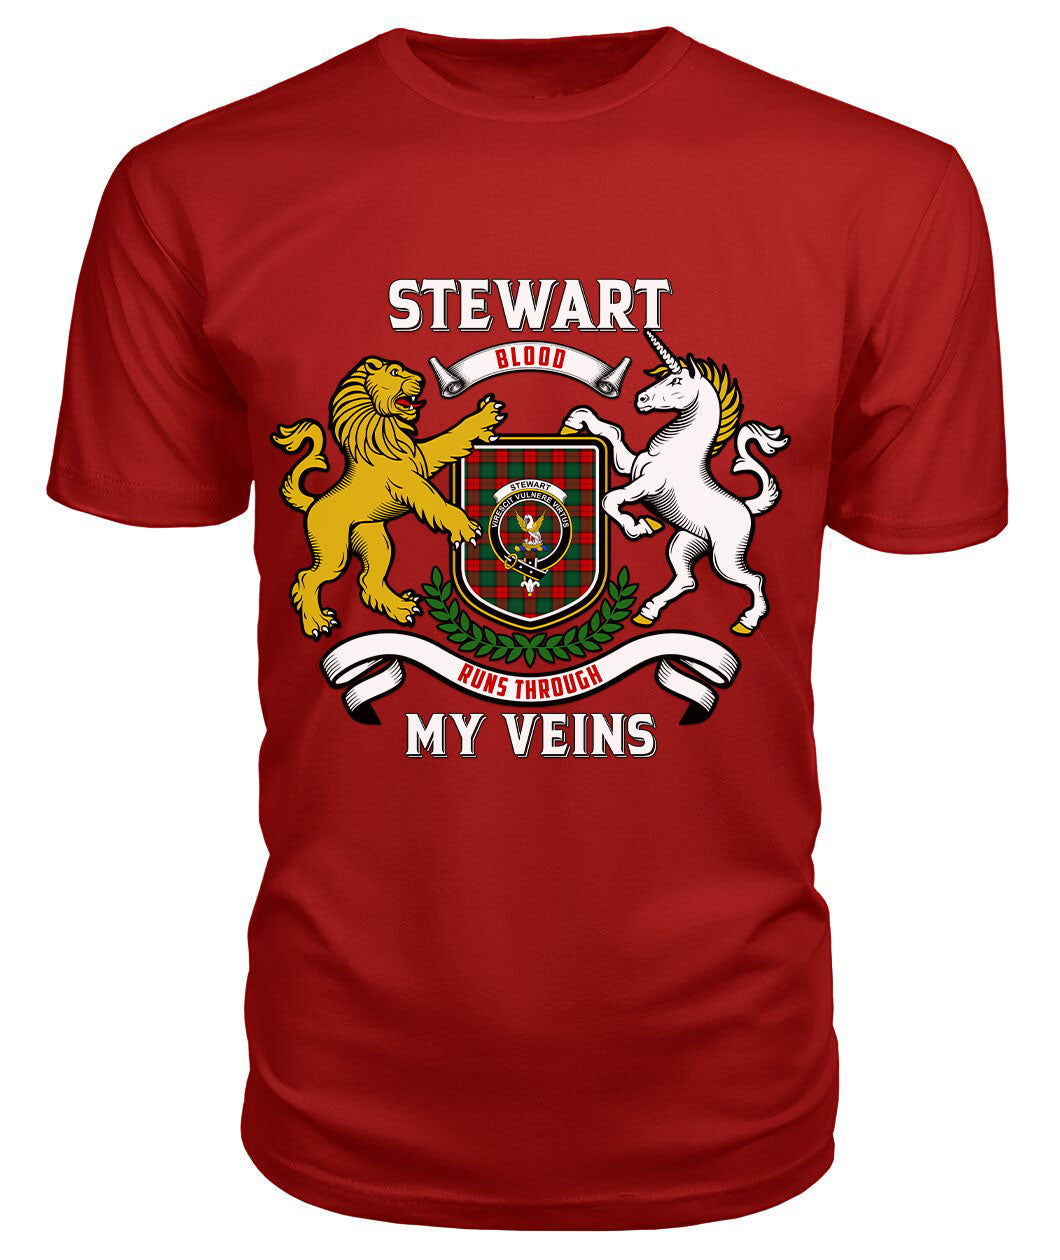 Stewart Atholl Modern Tartan Crest 2D T-shirt - Blood Runs Through My Veins Style